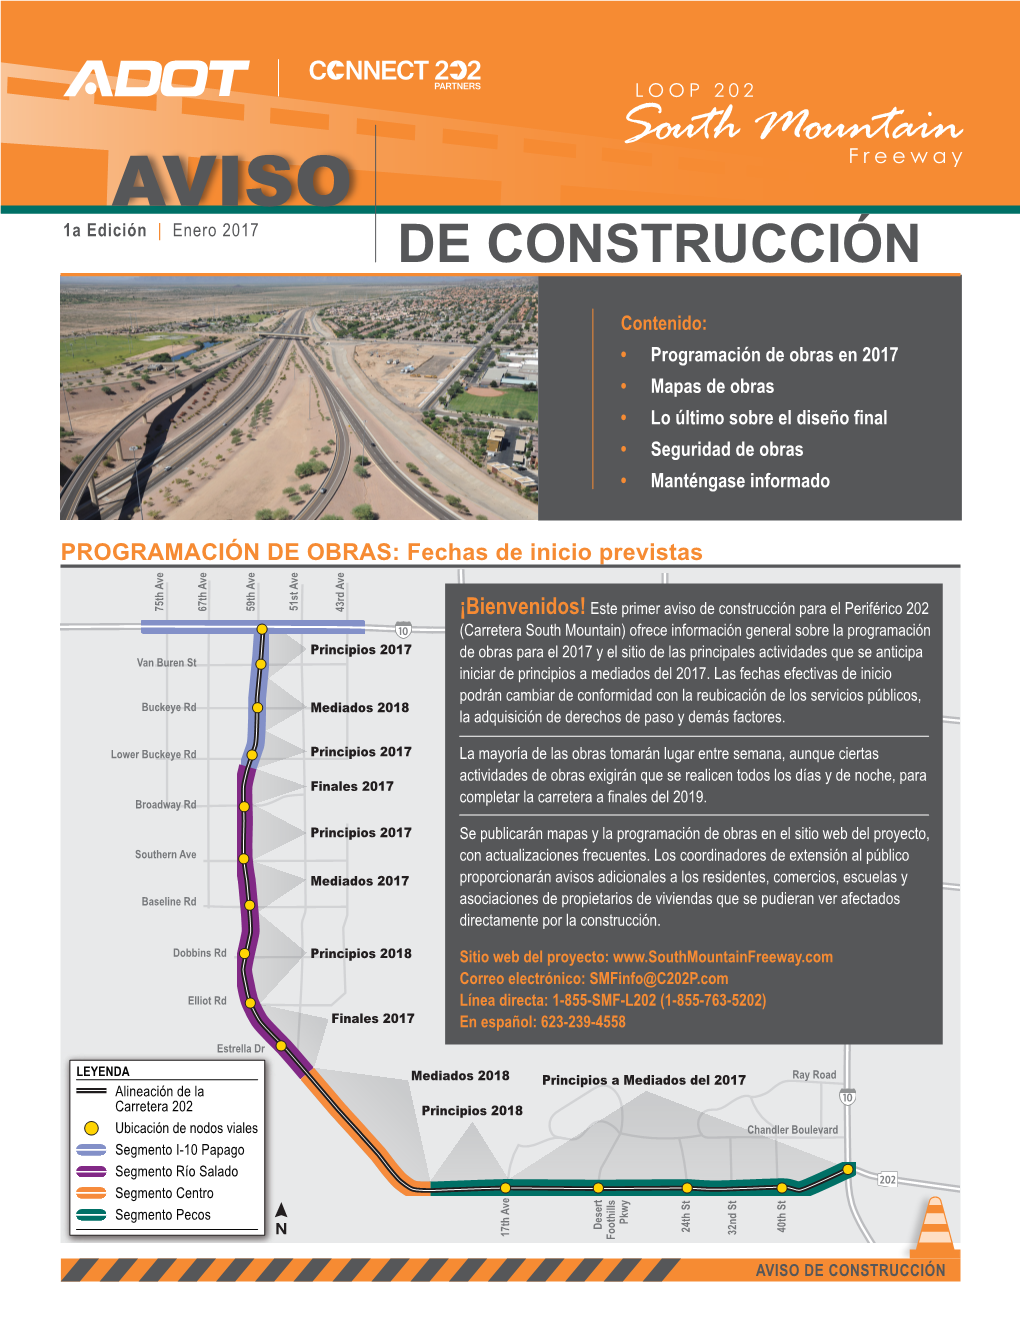 DE CONSTRUCCIÓN Restricciones De Carriles Y Cierres Periódicos De Pecos Road Puentes Provisional Durante El Transcurso De La Construcción